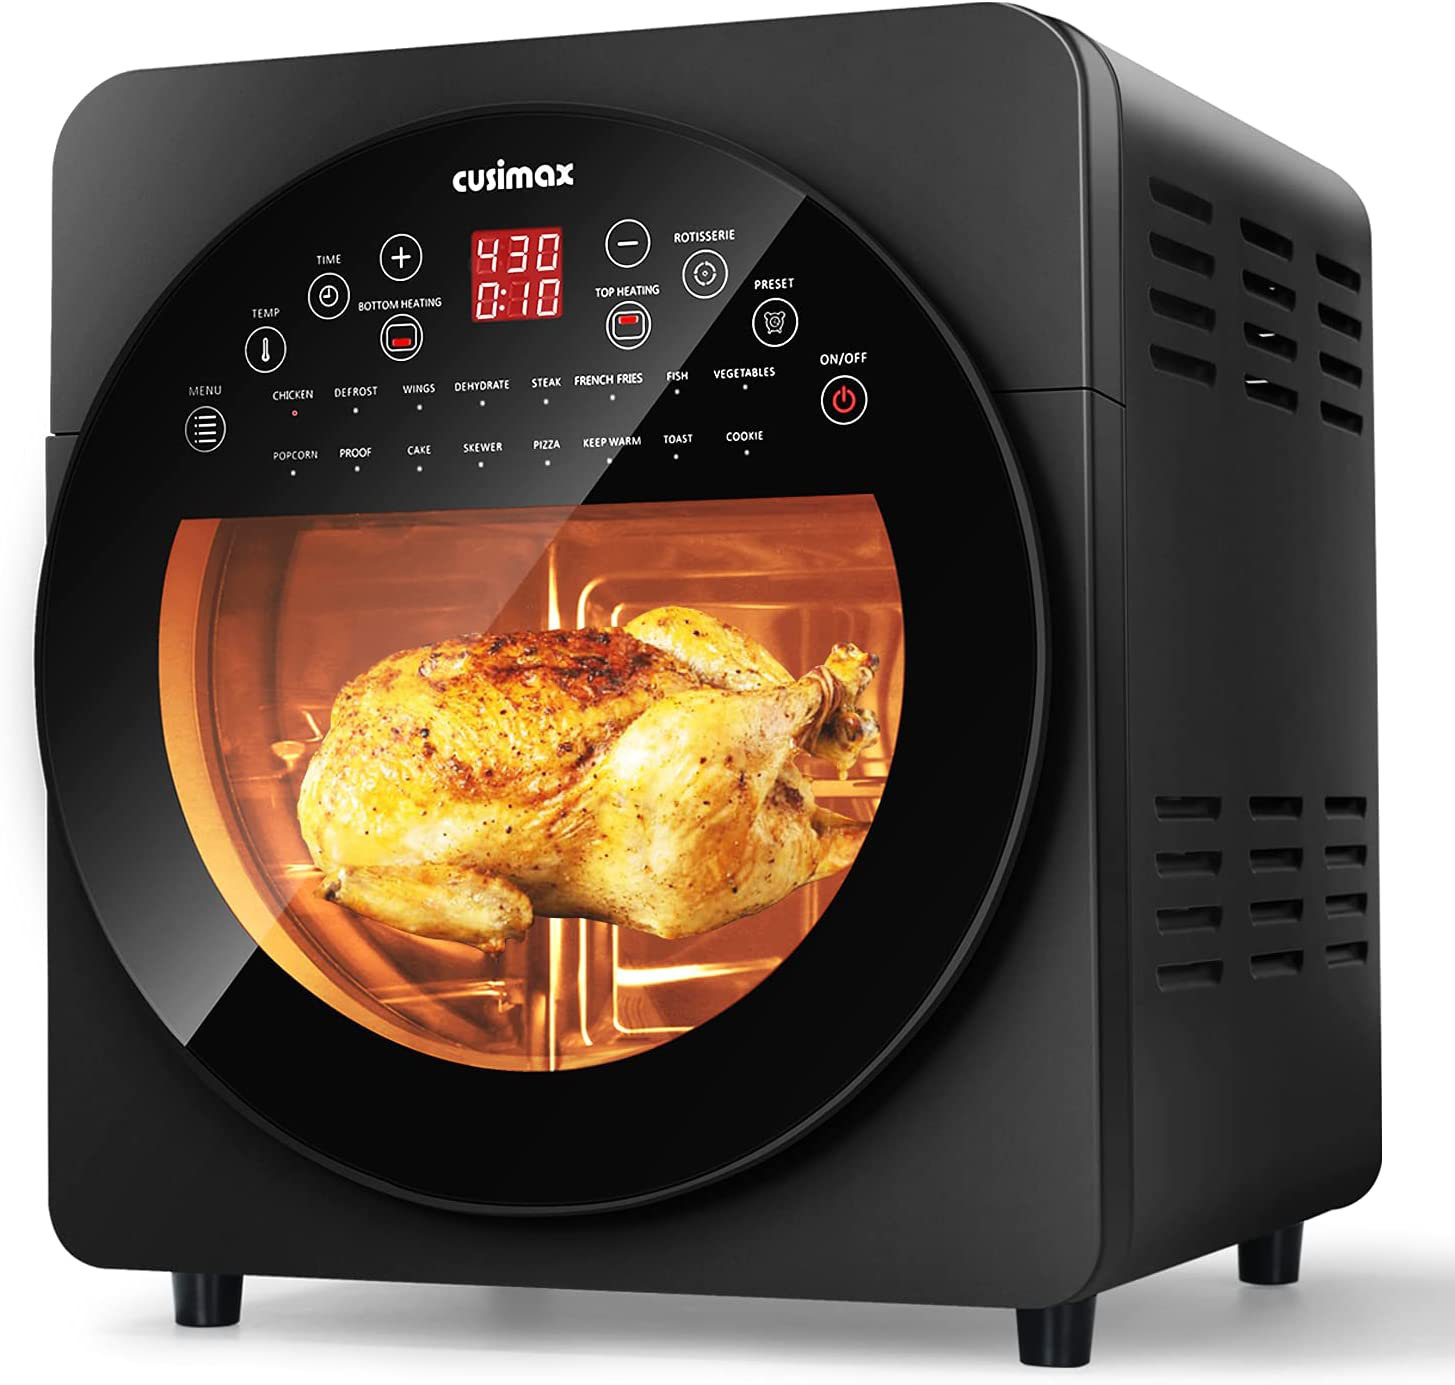 https://assets.wfcdn.com/im/52072873/compr-r85/2184/218418281/155-qt-air-fryer-oven-bake-roast-rotisserie-dehydrate-re-heat-16-quick-menu-presets.jpg